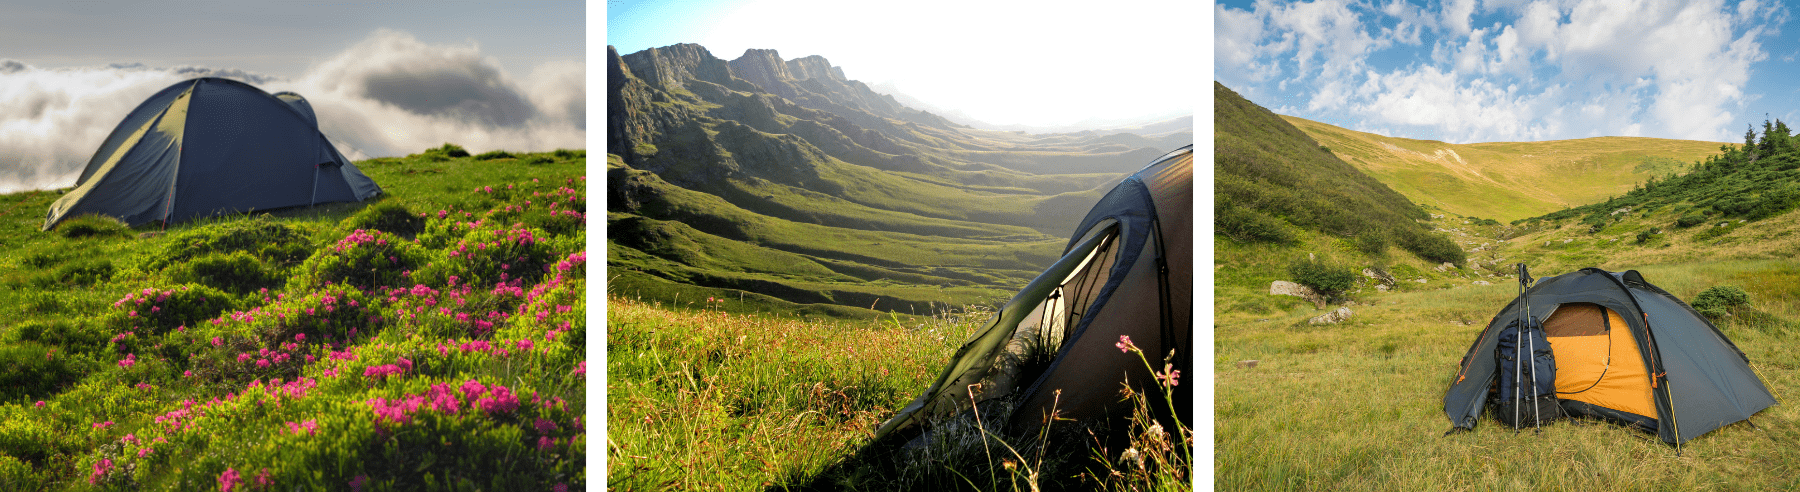 אוהל באתר קמפינג ומחנאות